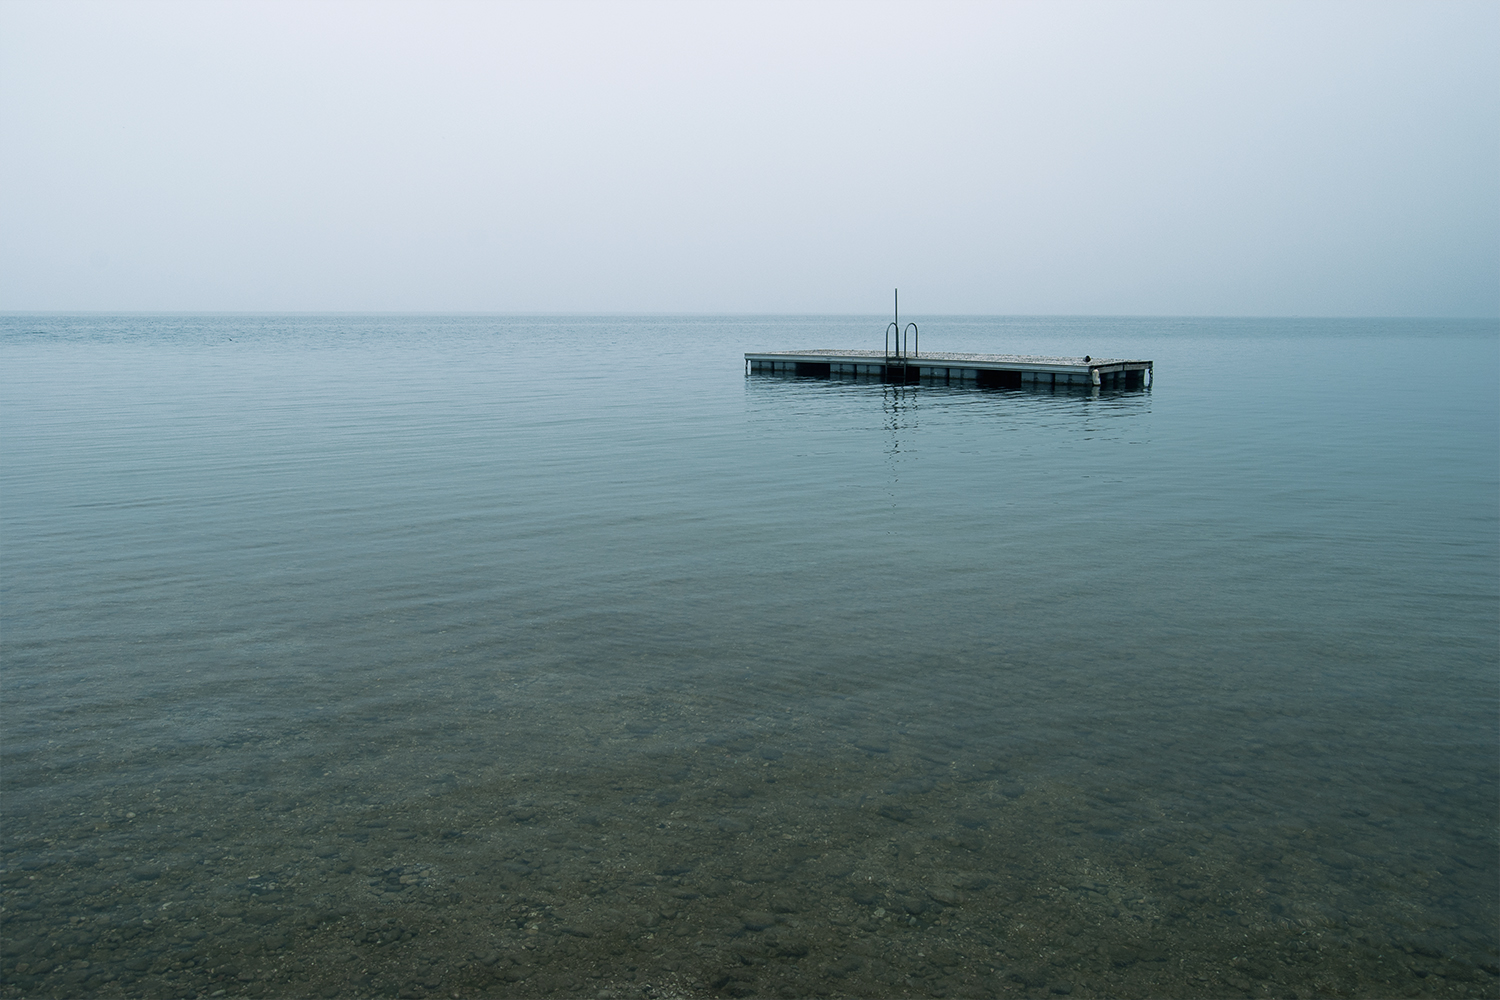 Lago di garda in un giorno nebbioso